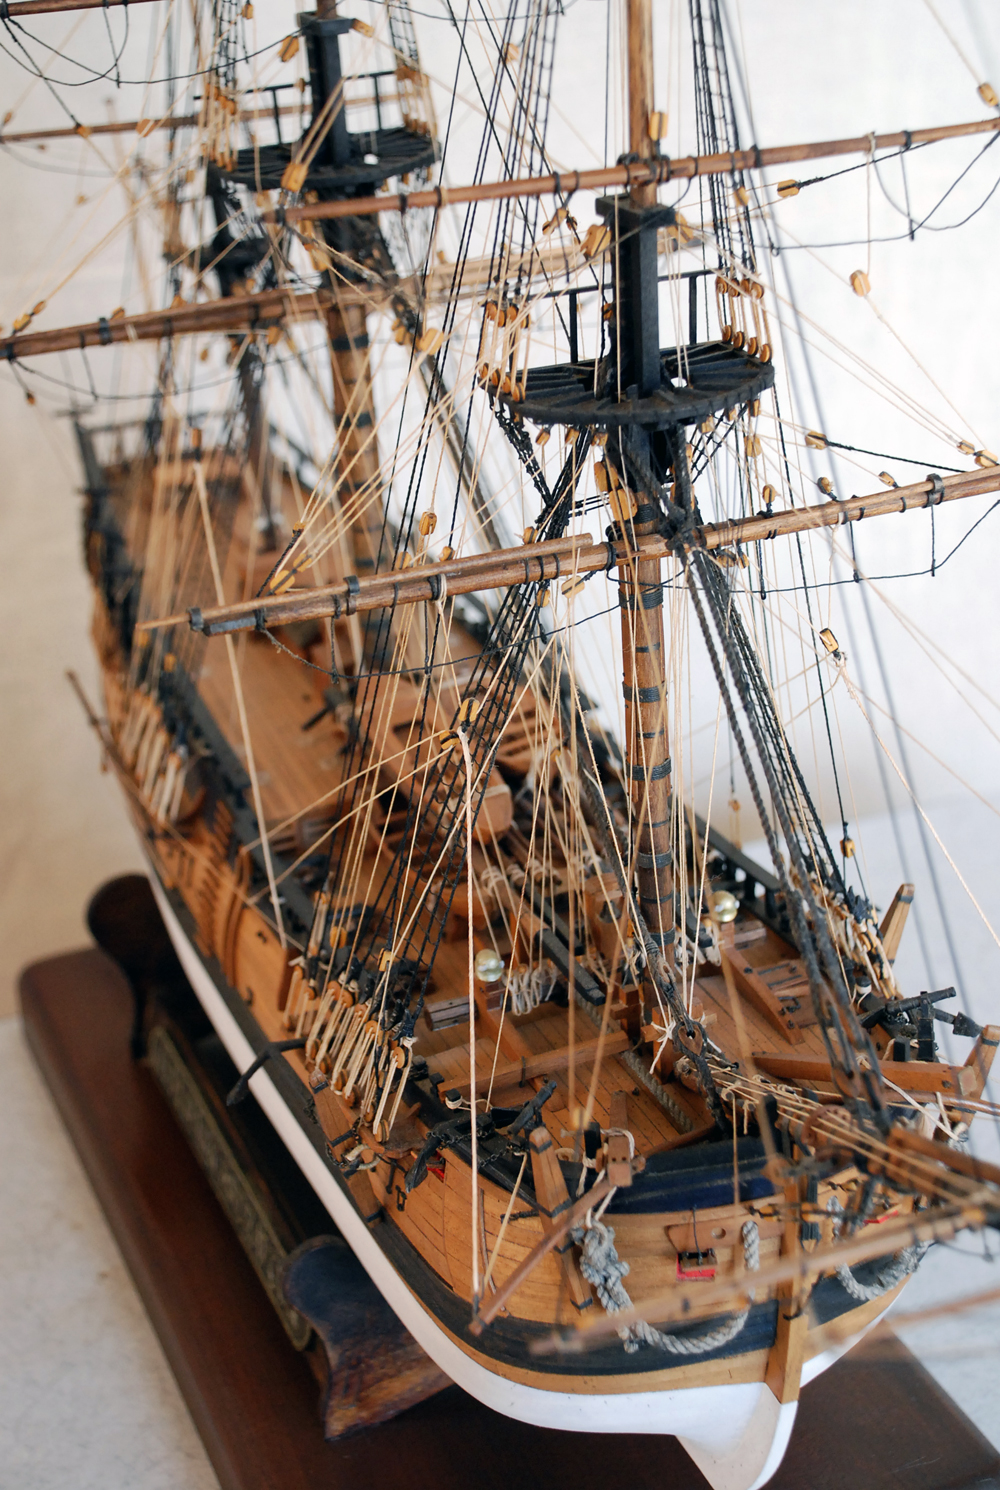 エンデバー号 HMB Endeavour | 帆船模型のDockyard SAKAI